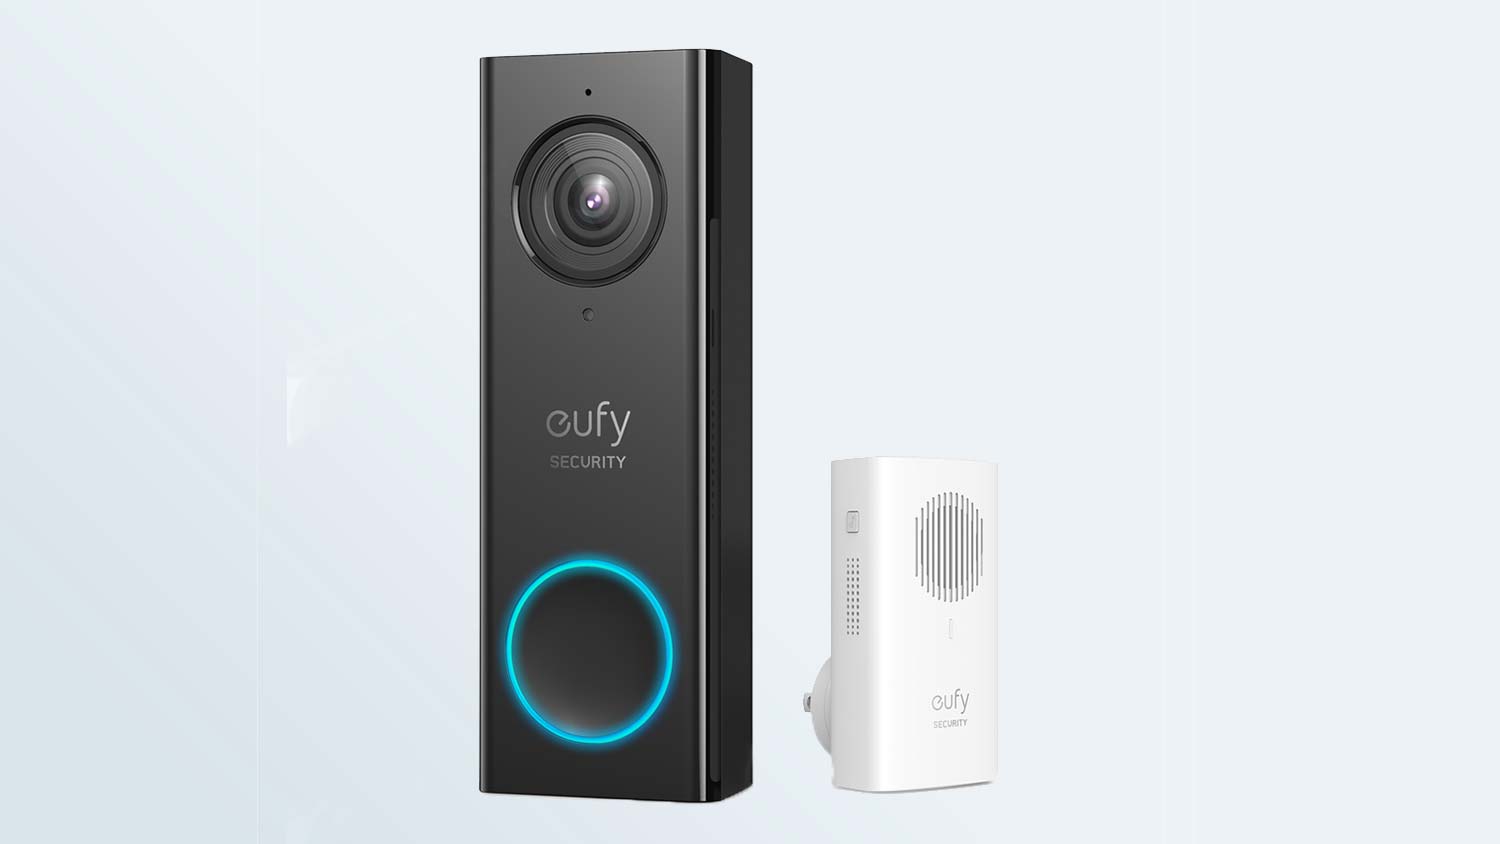 Best video doorbells: Eufy 2K Video Doorbell